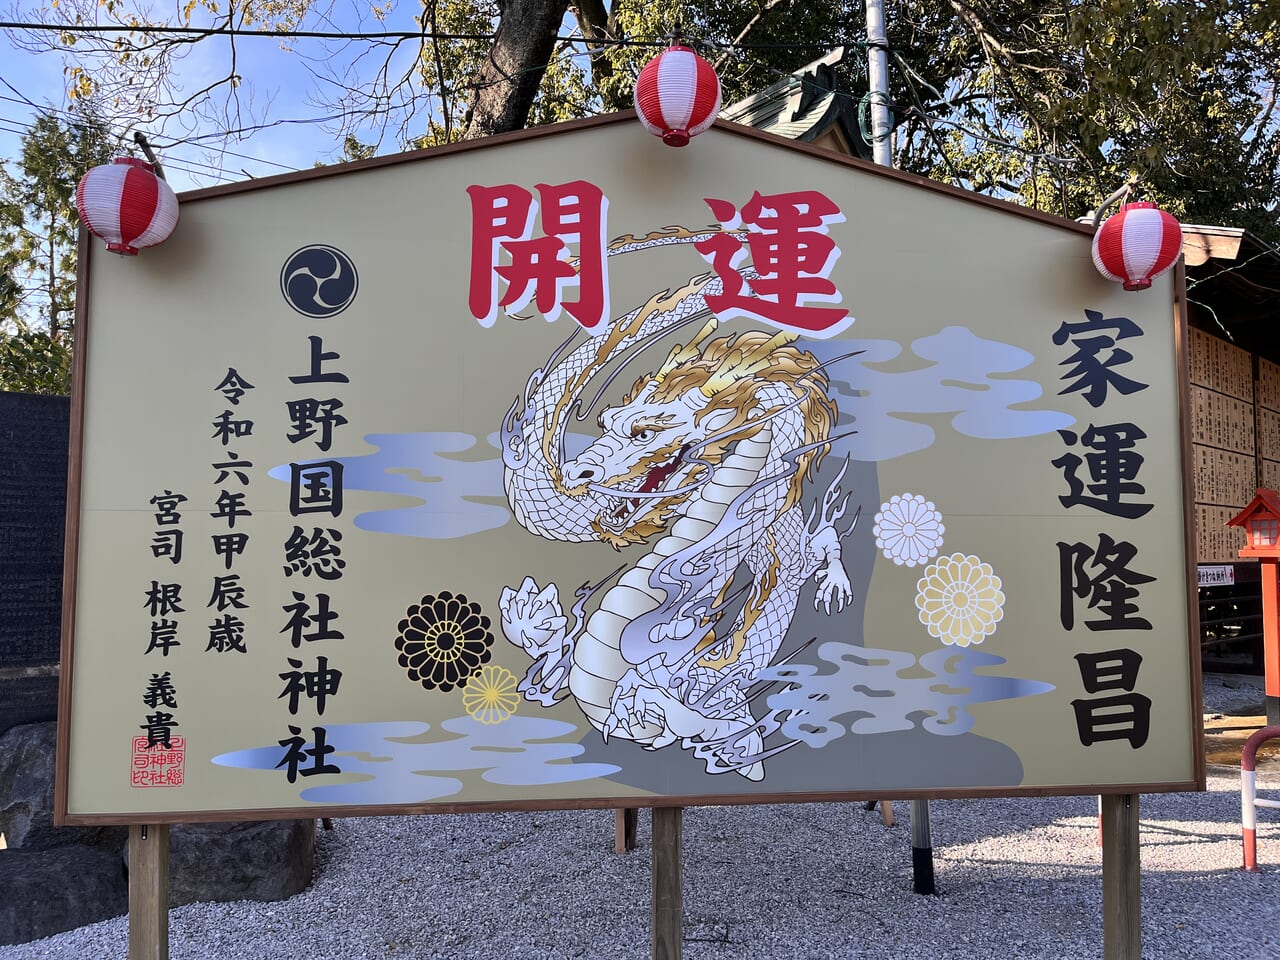 「総社神社」境内にある「開運・家運隆昌」の看板